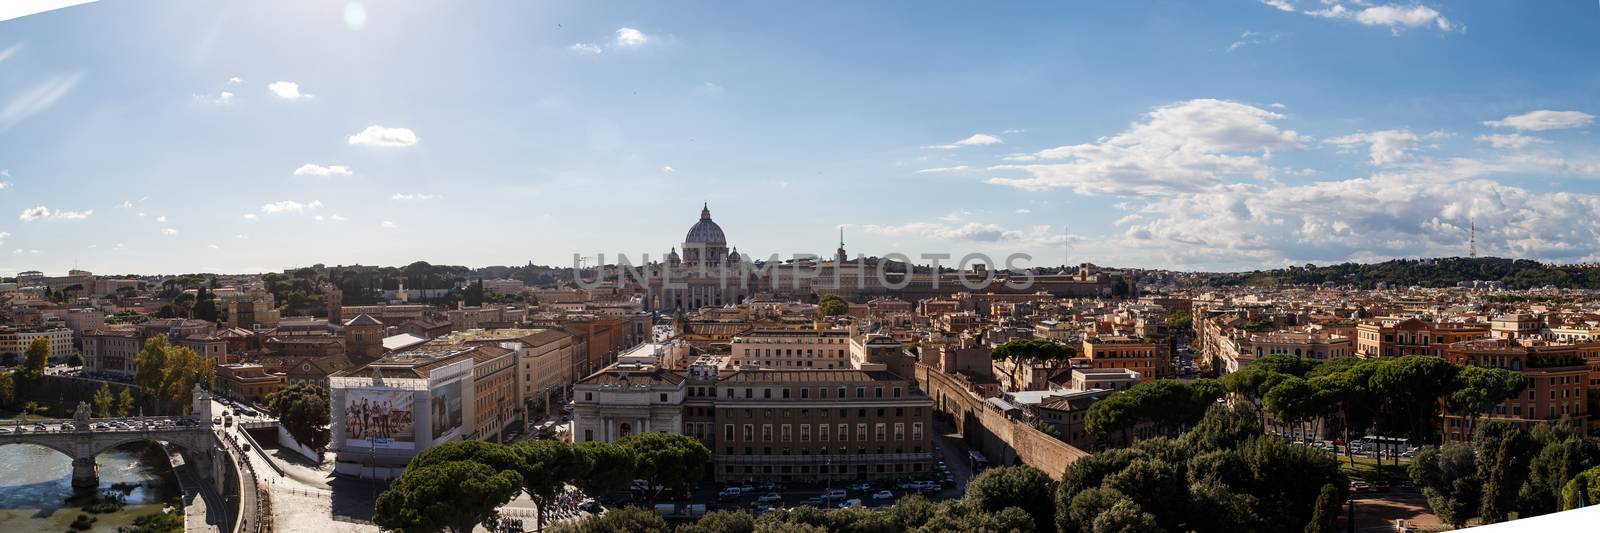 General Rome View by niglaynike